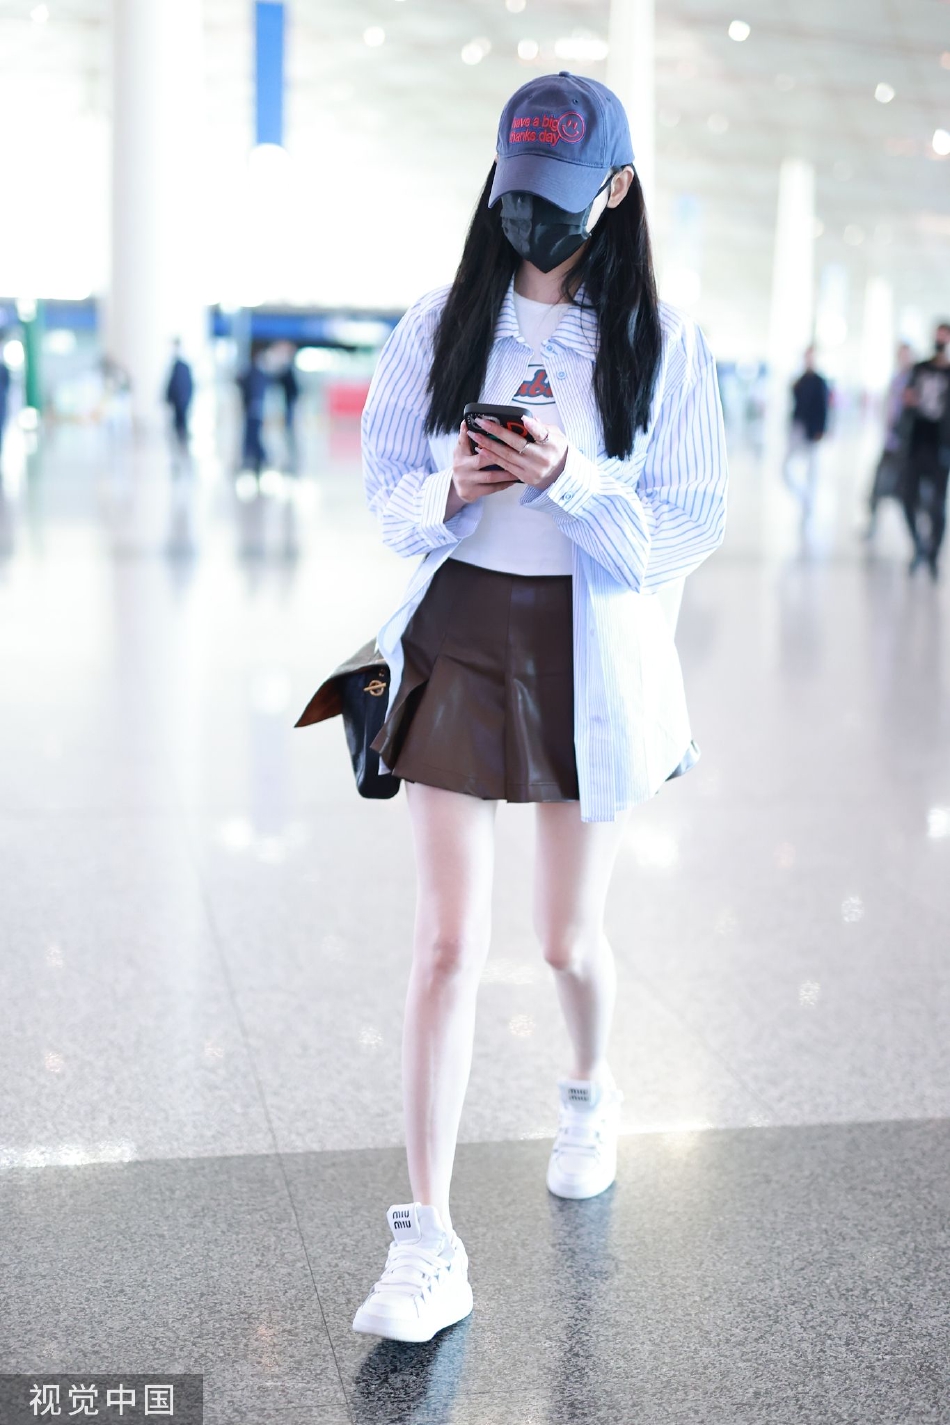 张天爱现身机场造型甜美 身穿衬衫搭配短裙秀白皙长腿